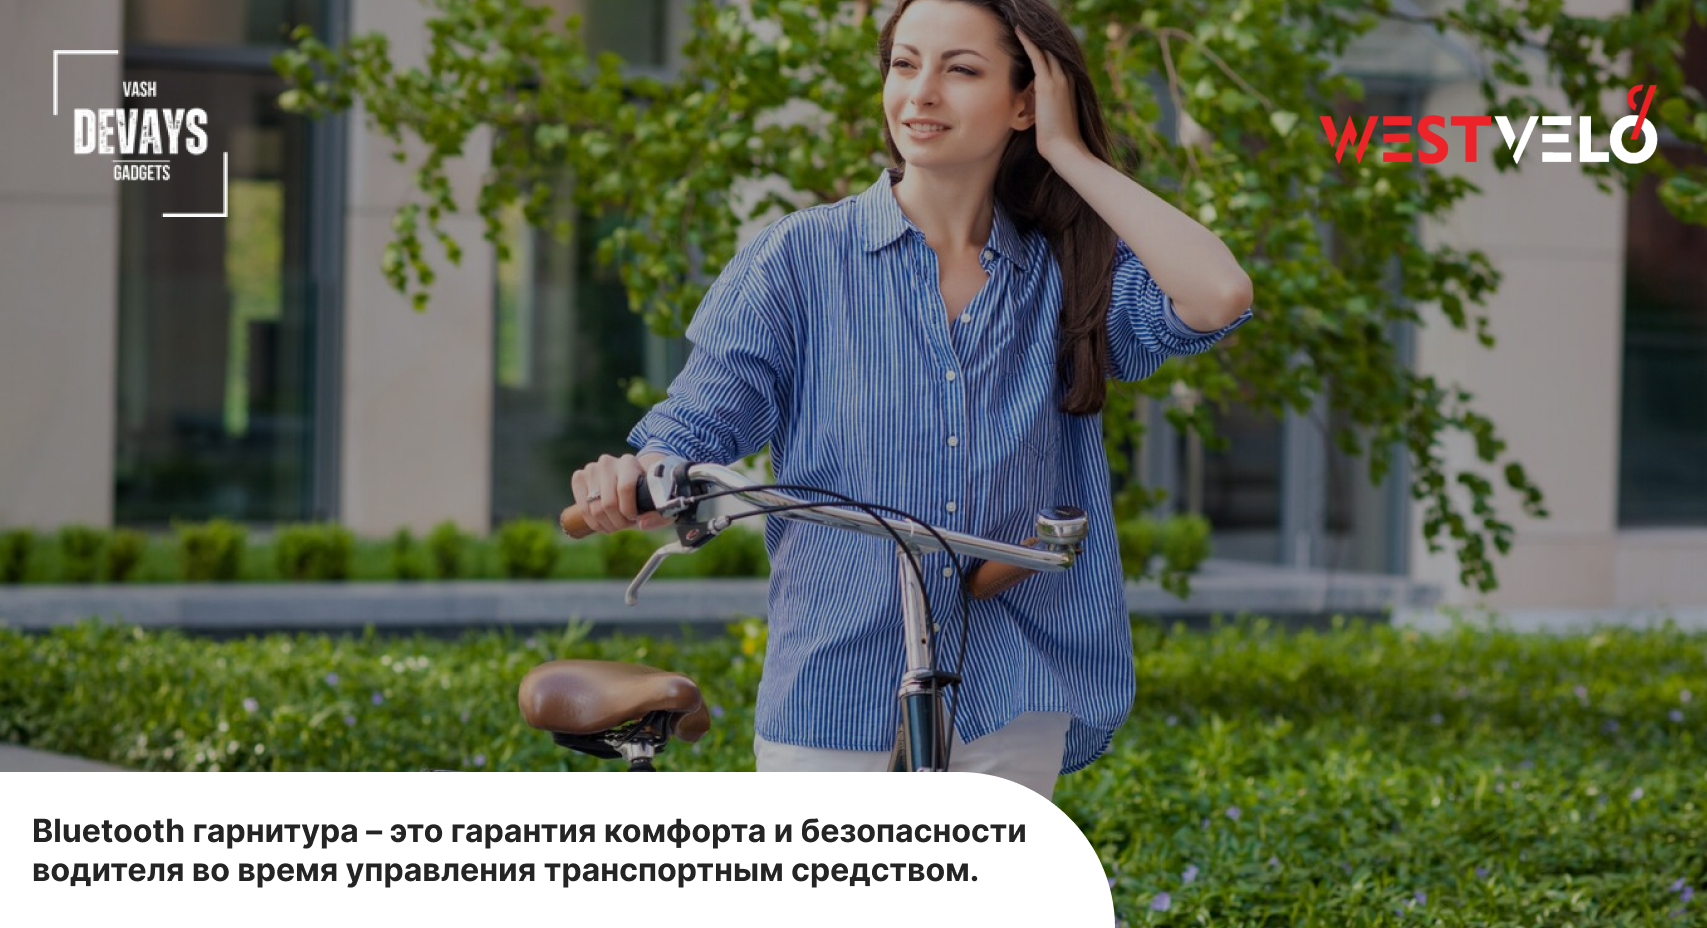 Купить Bluetooth гарнитуру для катания на велосипеде в интернет-магазине VashDevays